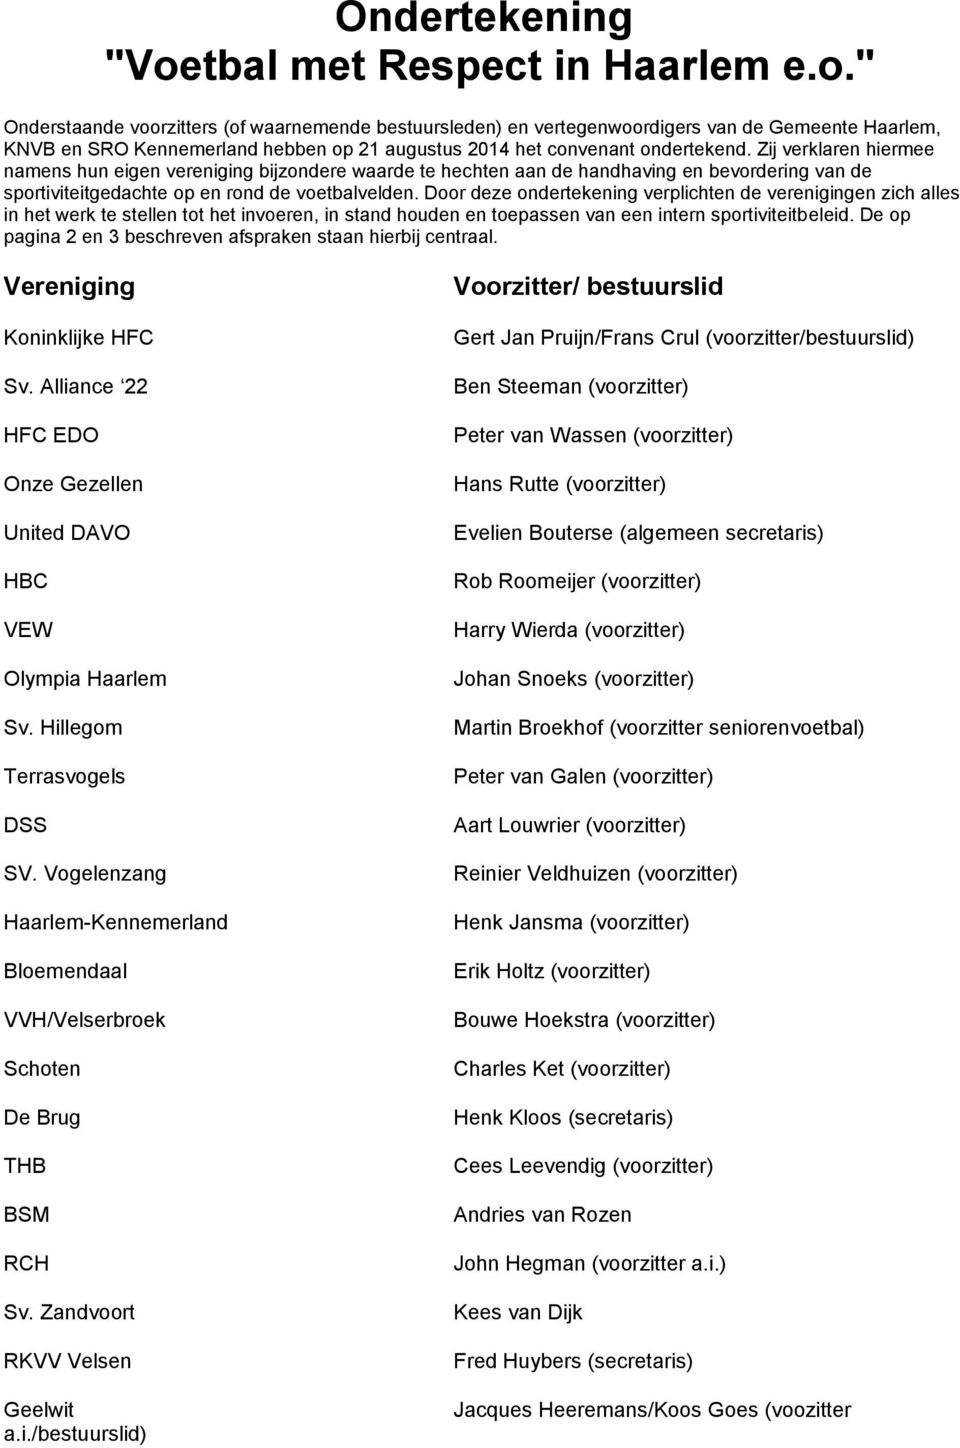 " Onderstaande voorzitters (of waarnemende bestuursleden) en vertegenwoordigers van de Gemeente Haarlem, KNVB en SRO Kennemerland hebben op 21 augustus 2014 het convenant ondertekend.